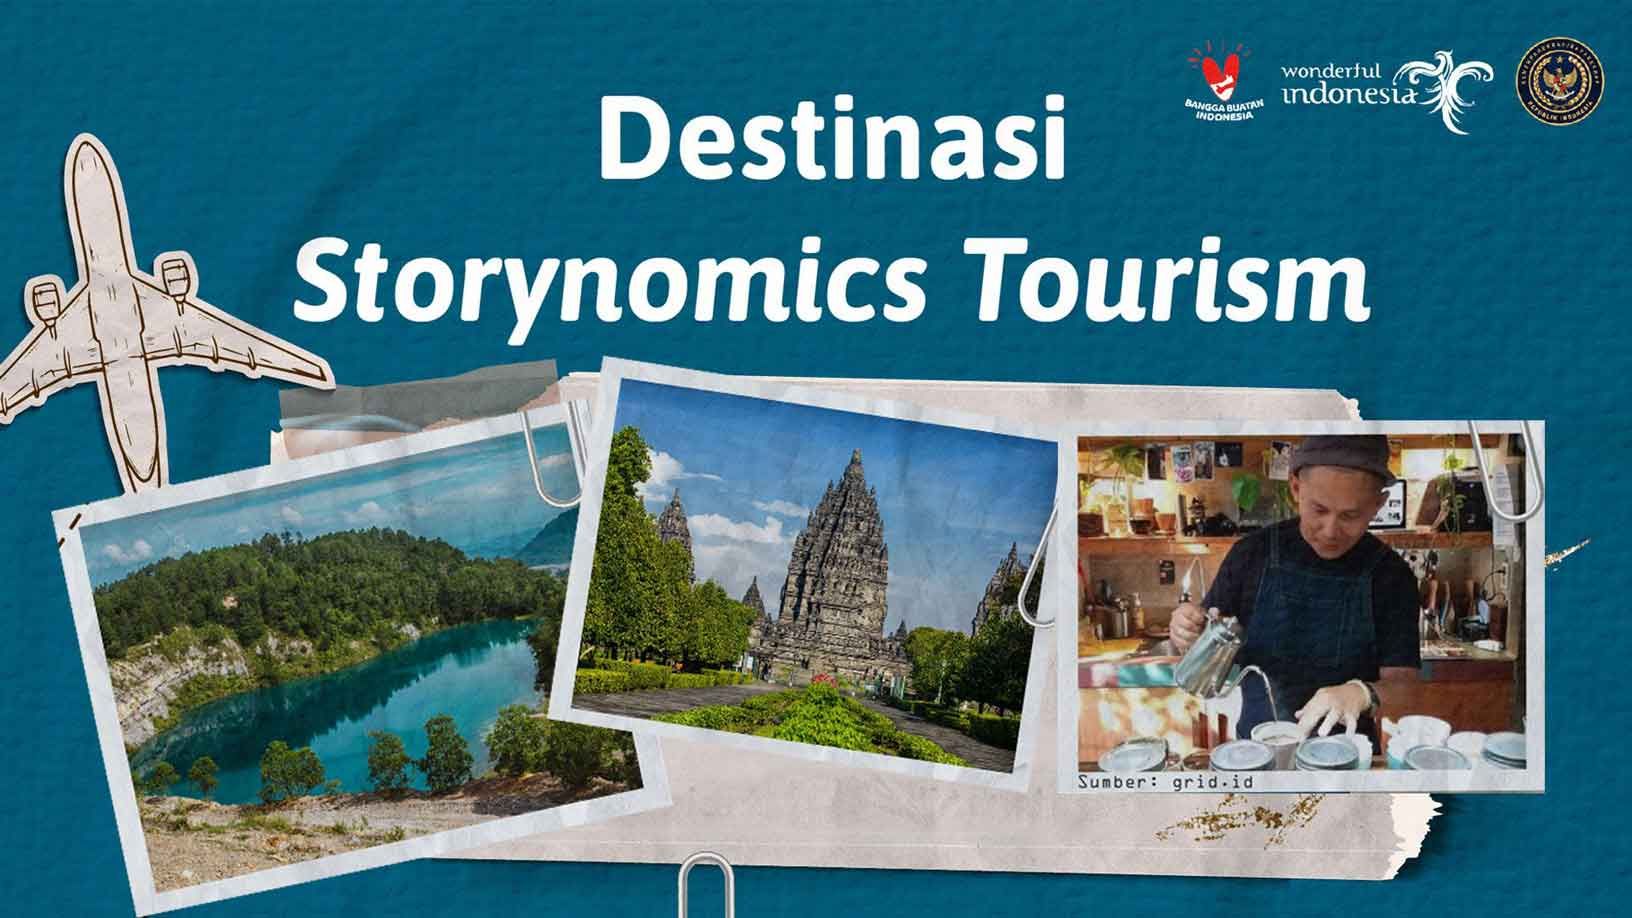 Destinasi Storynomics Tourism